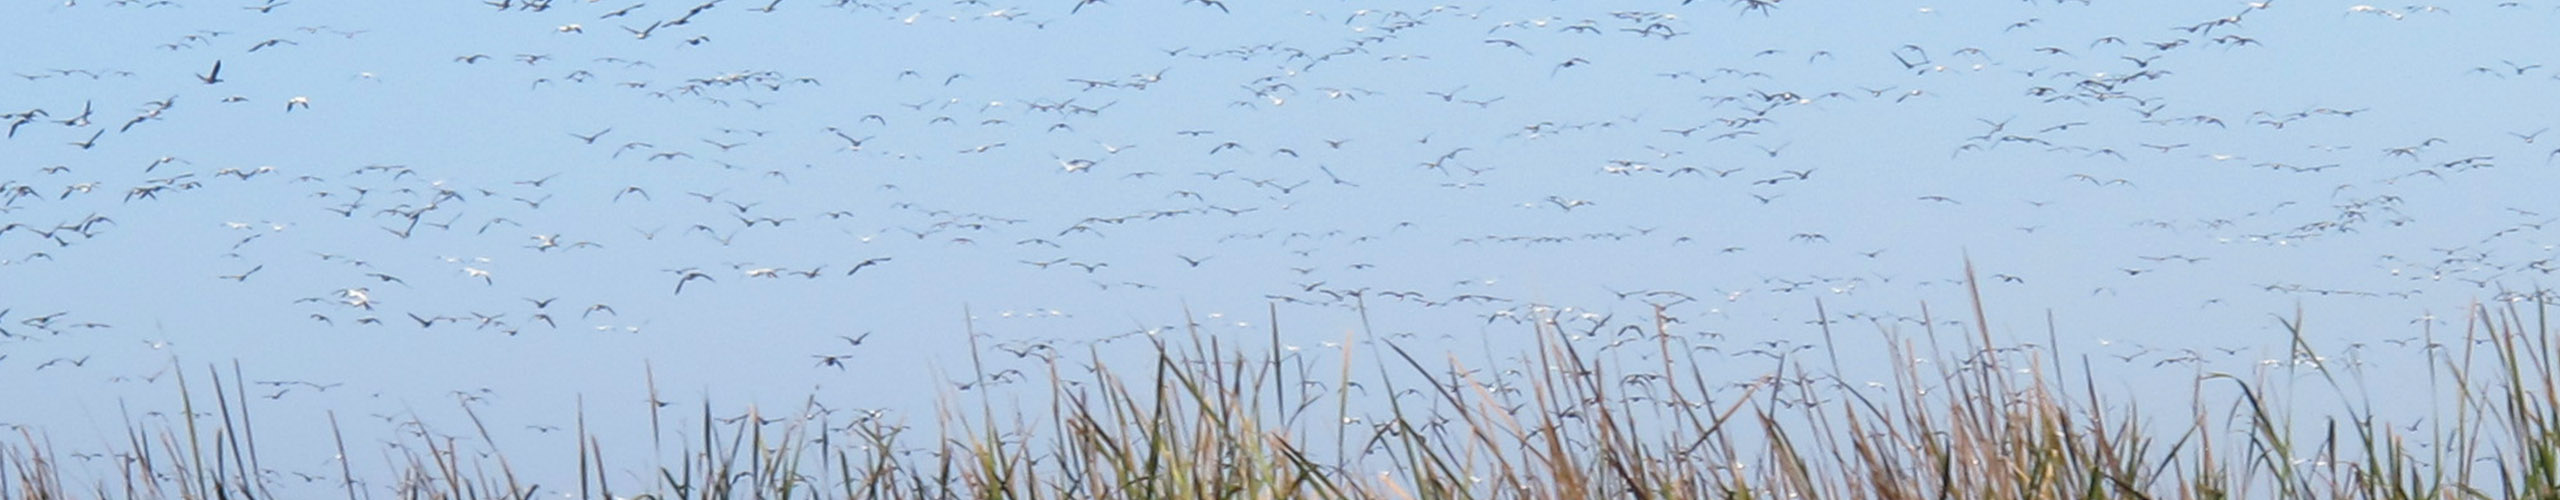 Many birds in flight over marsh